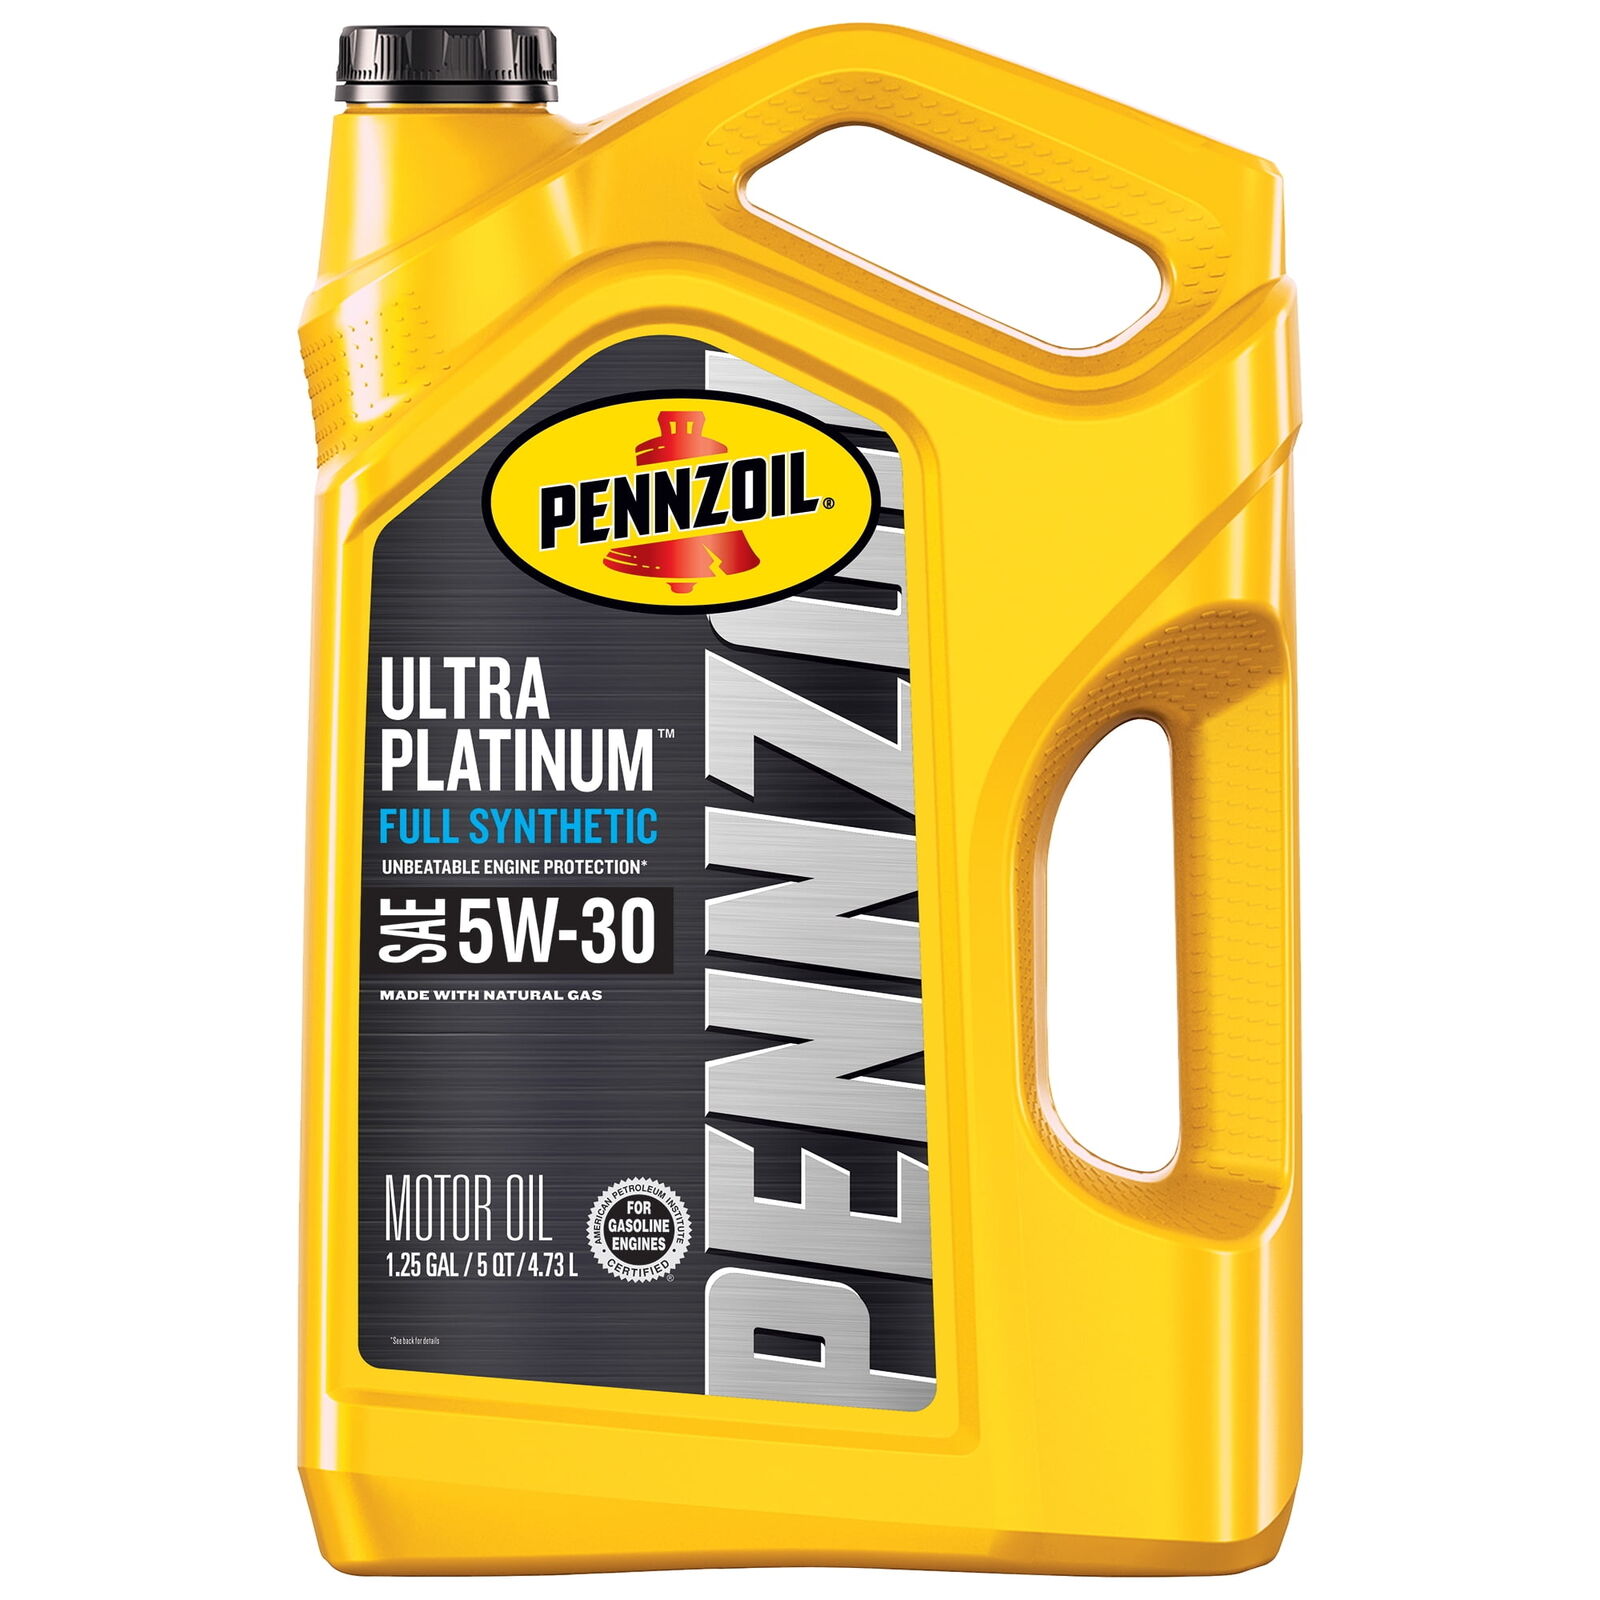 Pennzoil Ultra Platinum 5W-30 Full Synthetic Motor Oil, 5 Quart,new